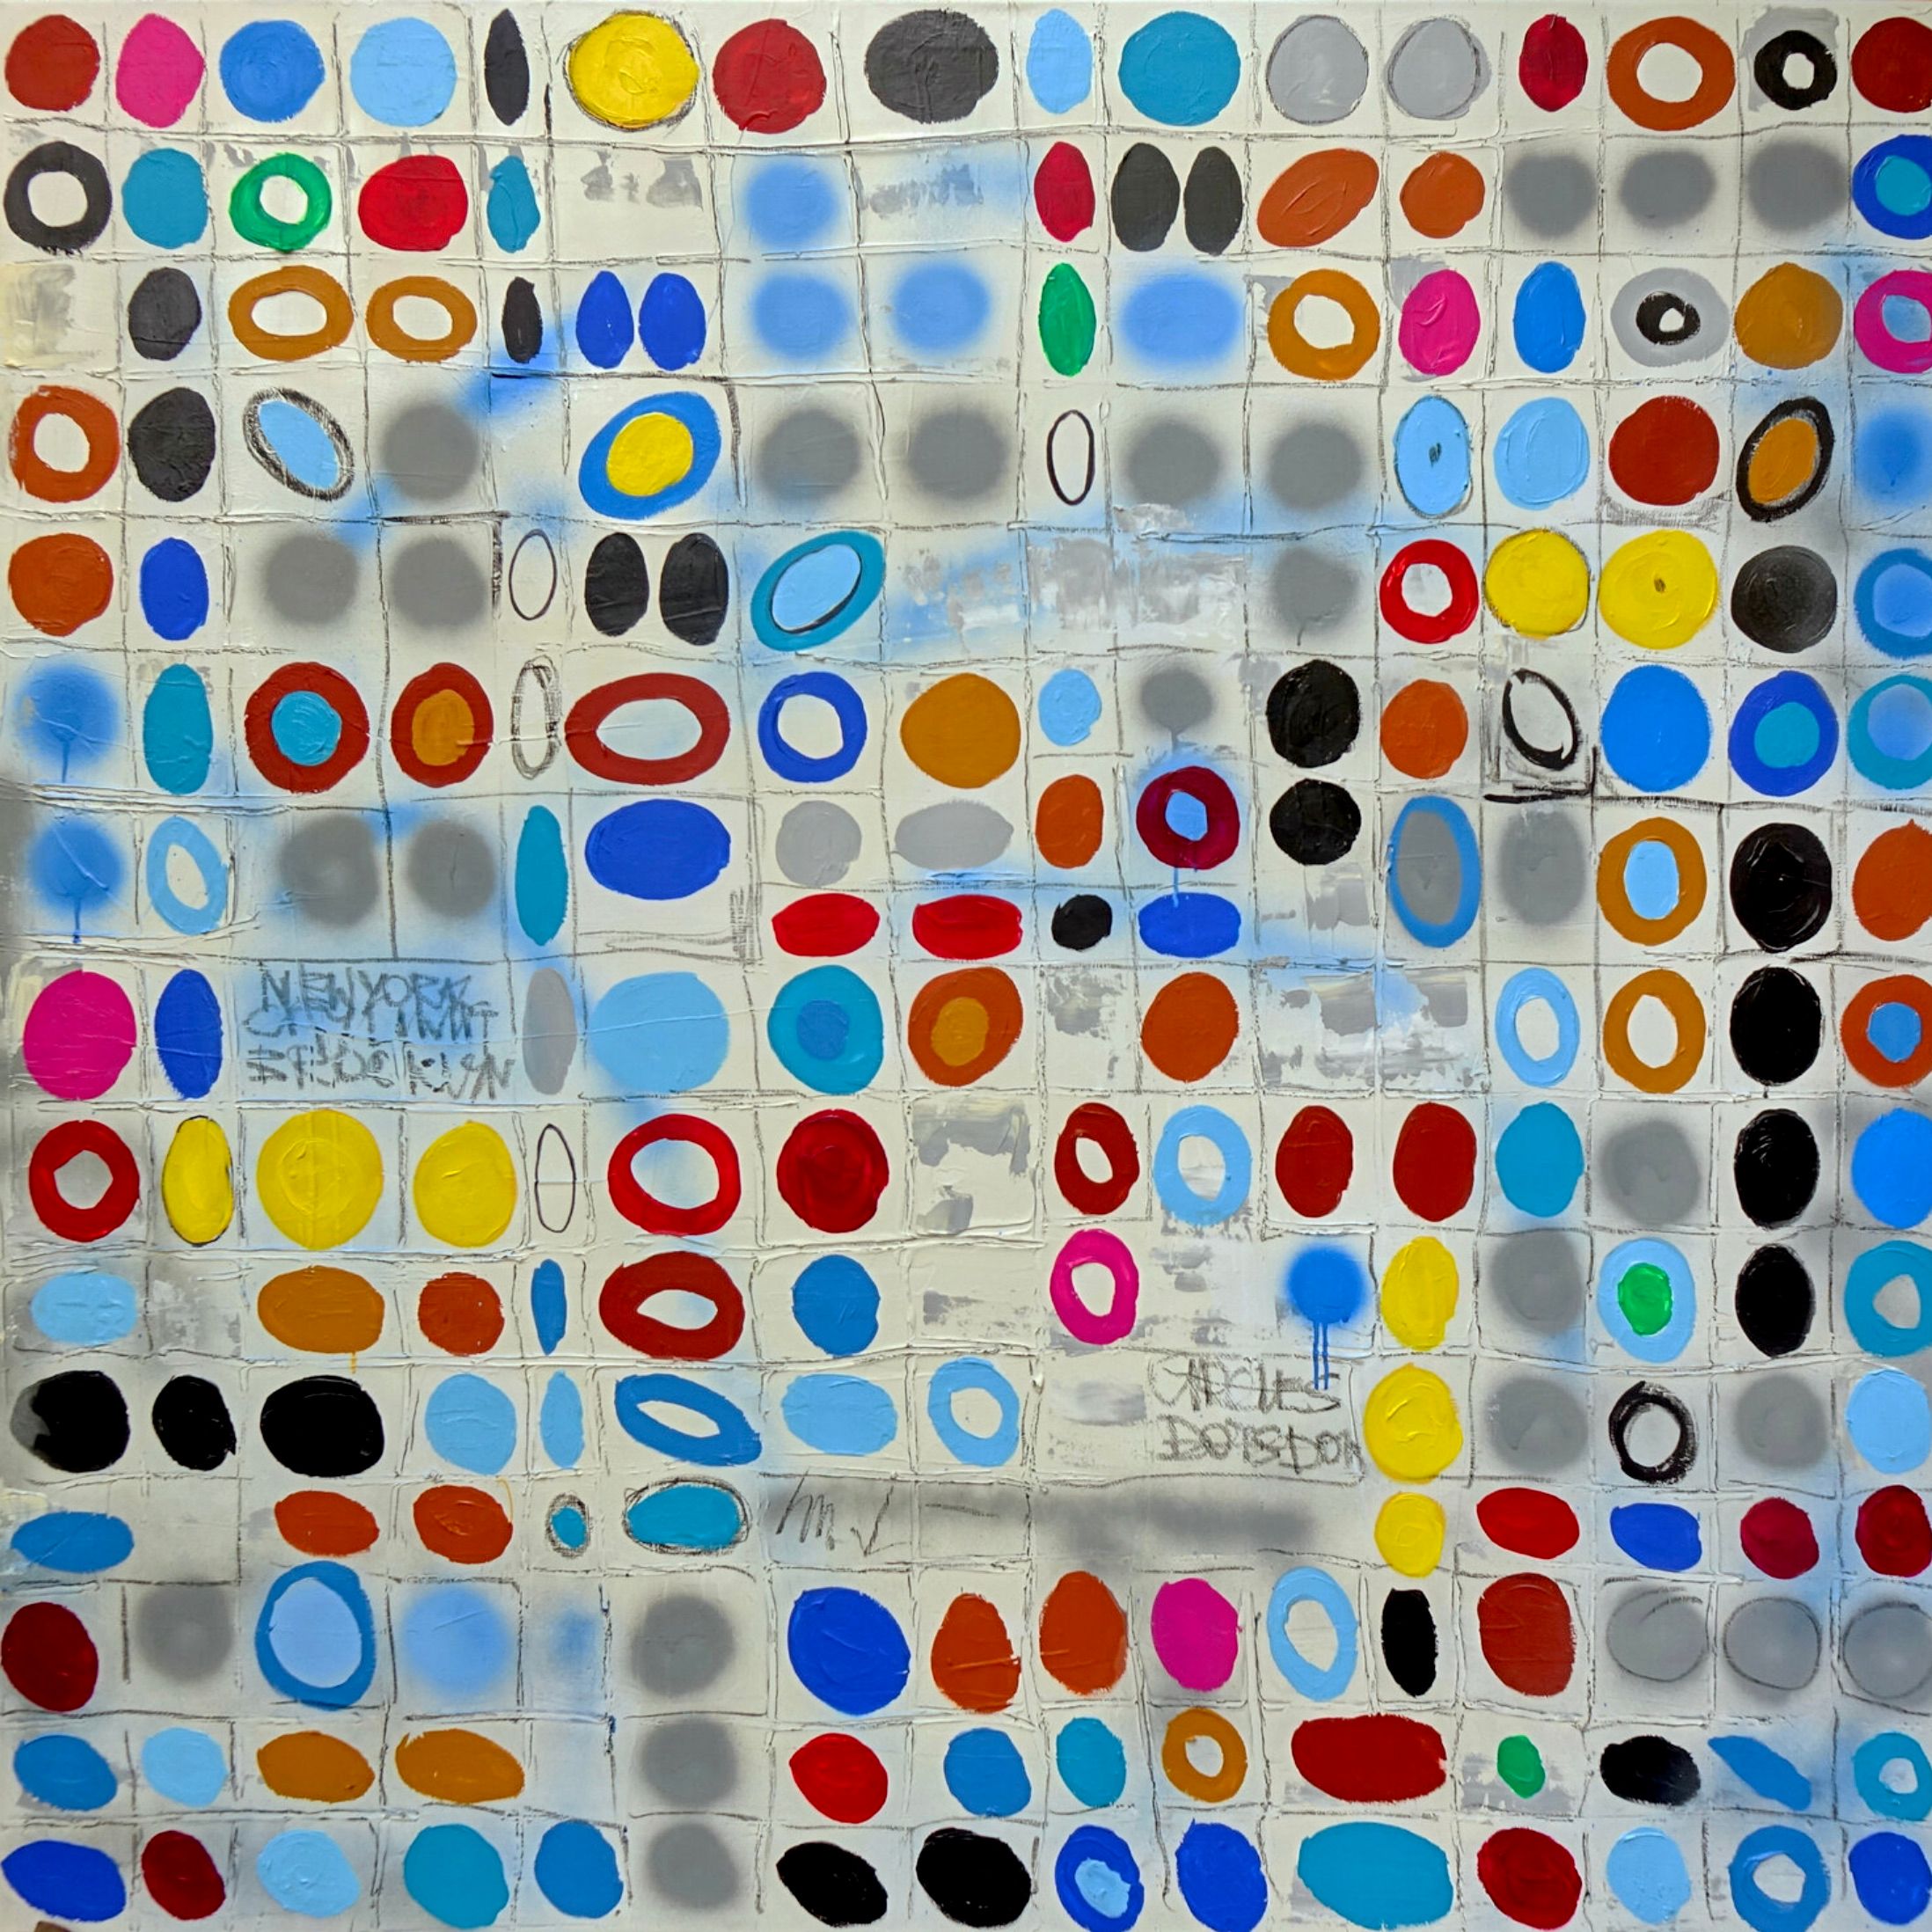 Wojtek Babski, "Circles 2", cercles et points, peinture pop-art grand format sur toile